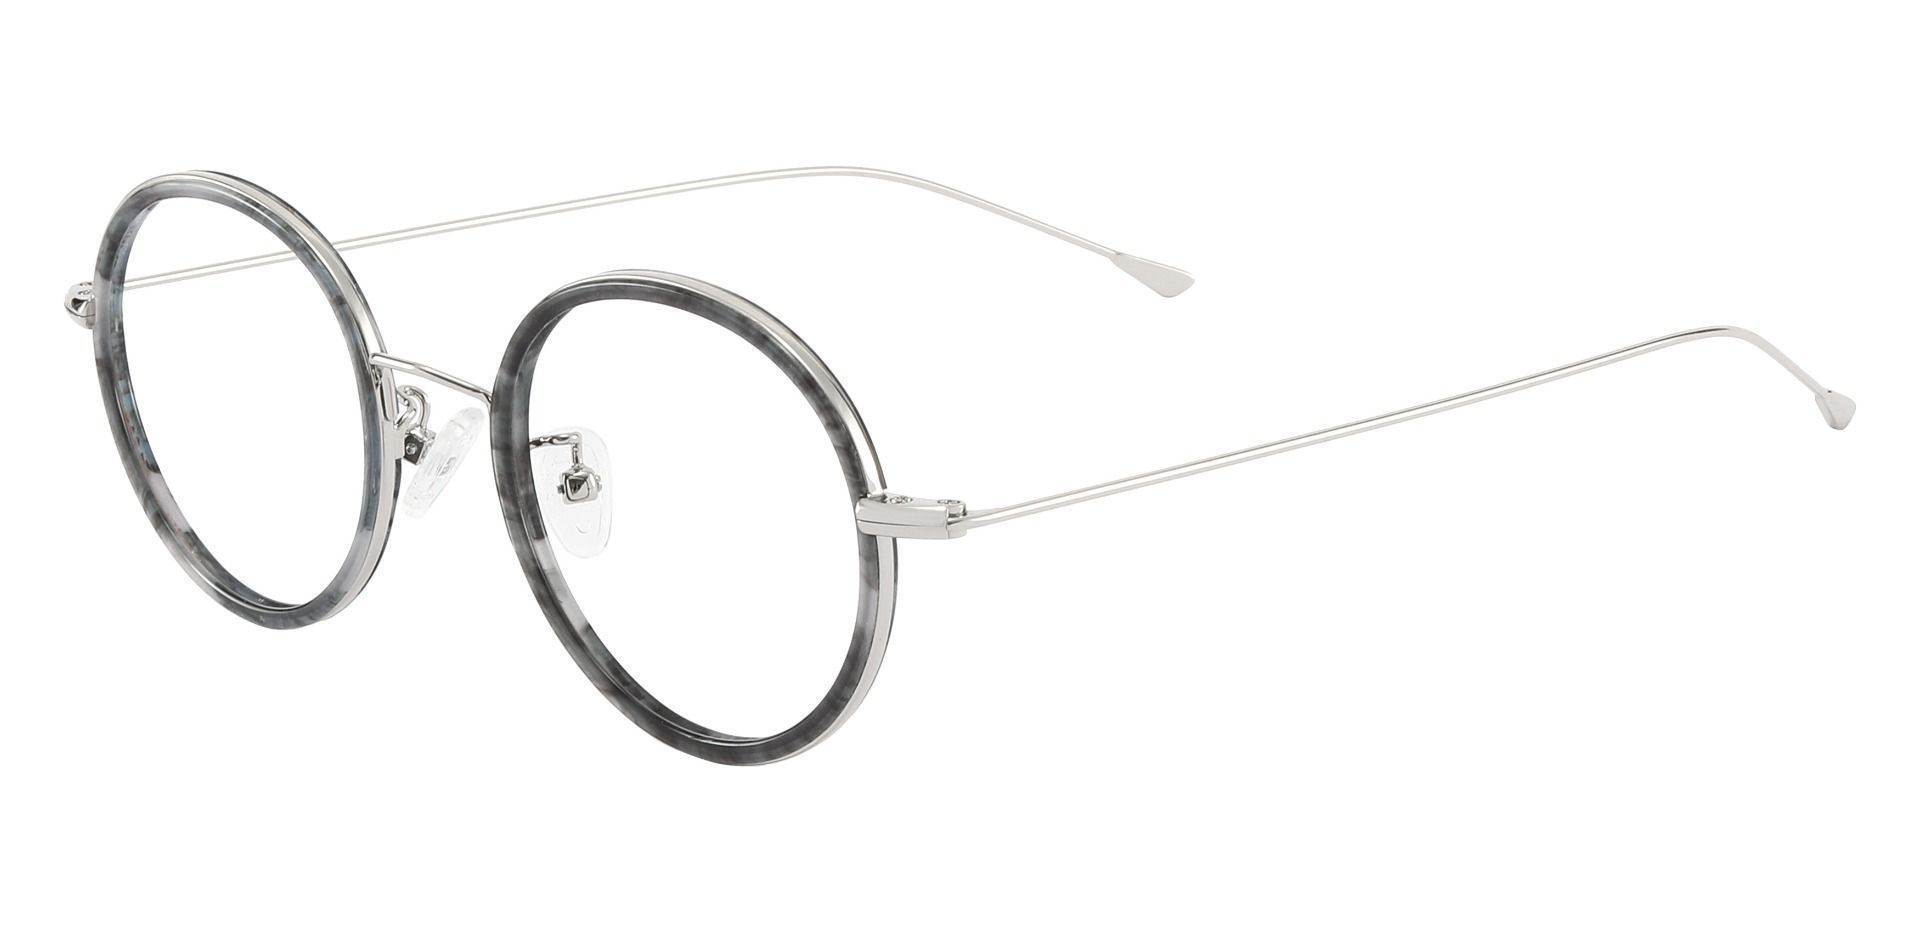 Malverne Oval Prescription Glasses - Gray